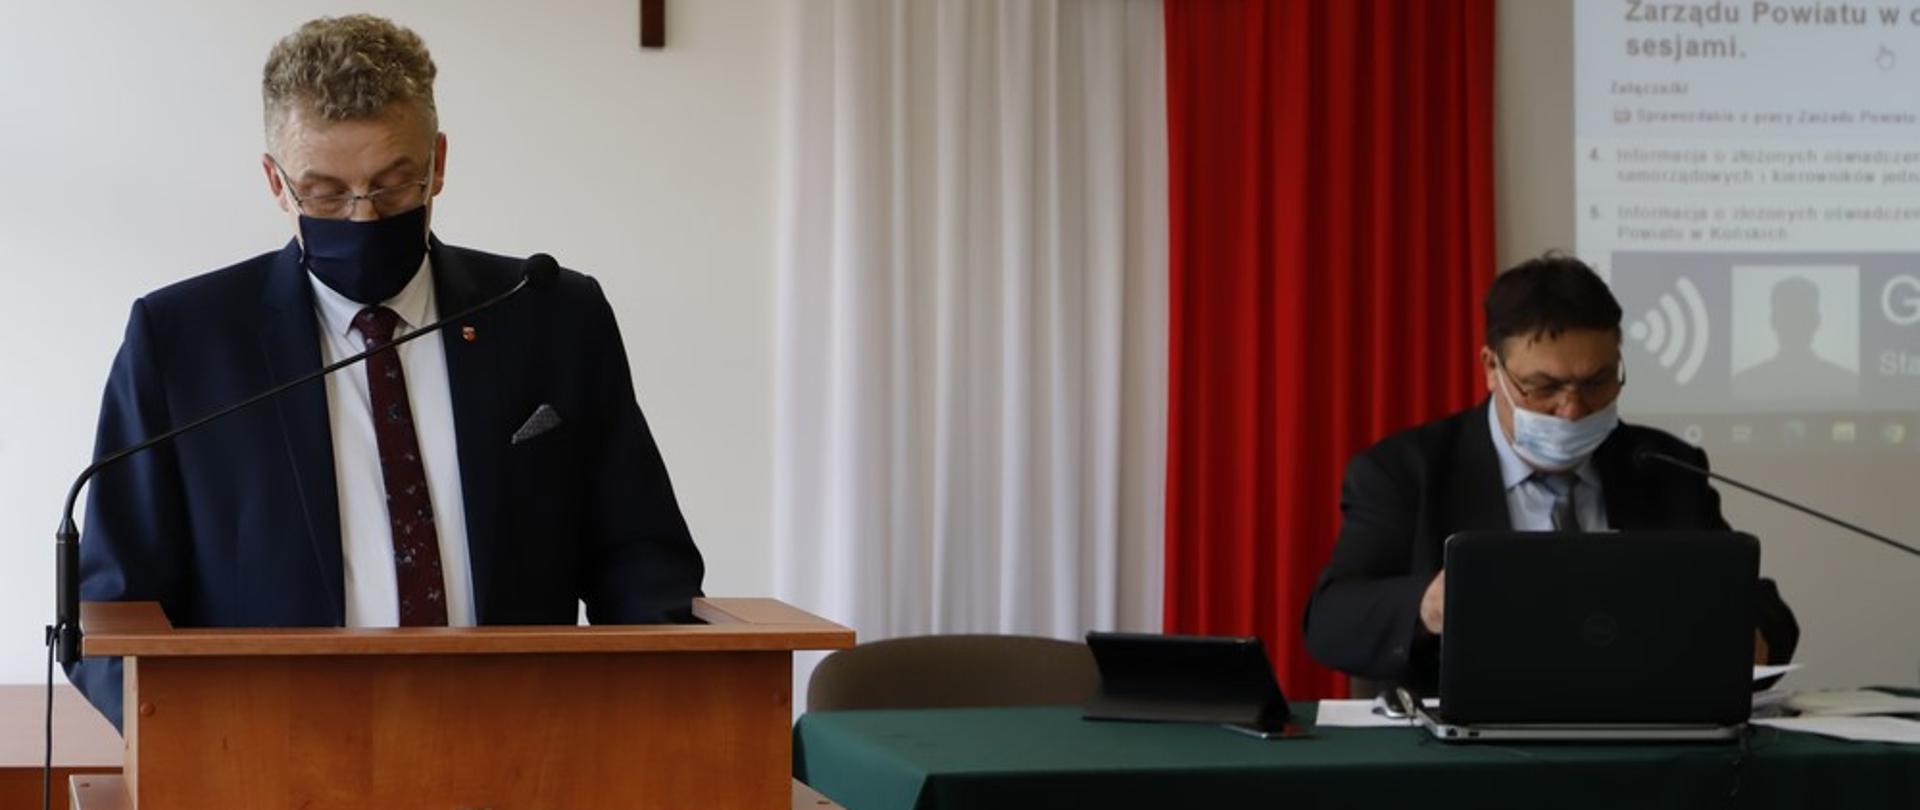 Przewodniczący Rady Powiatu Zbigniew Kowalczyk i Starosta Konecki Grzegorz Piec podczas posiedzenia Rady Powiatu